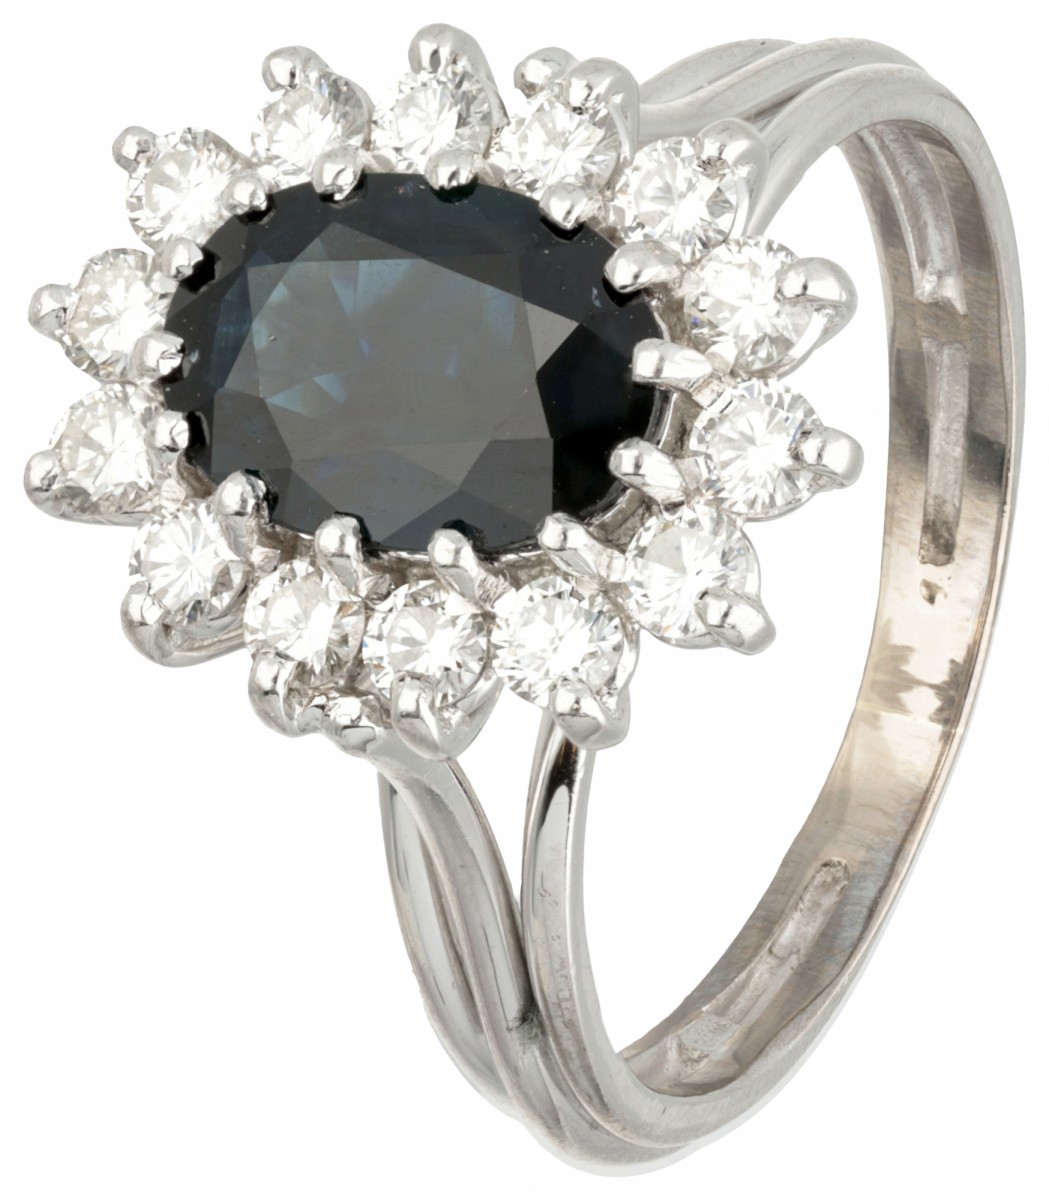 14 kt. Witgouden rozet ring bezet met ca. 0.42 ct. diamant en ca. 1.70 ct. natuurlijke saffier.